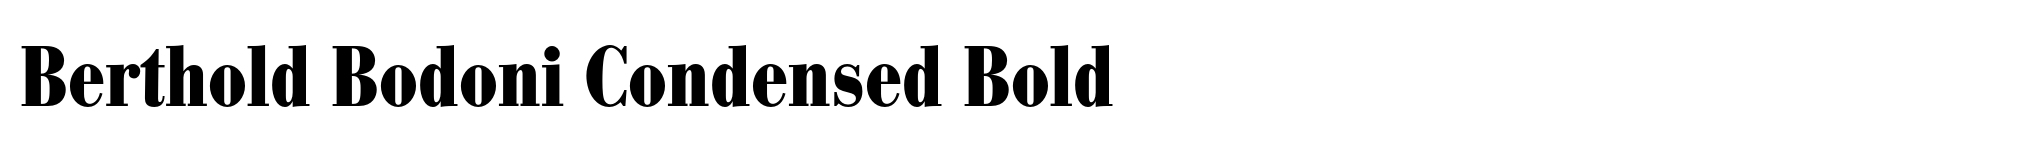 Berthold Bodoni Condensed Bold image